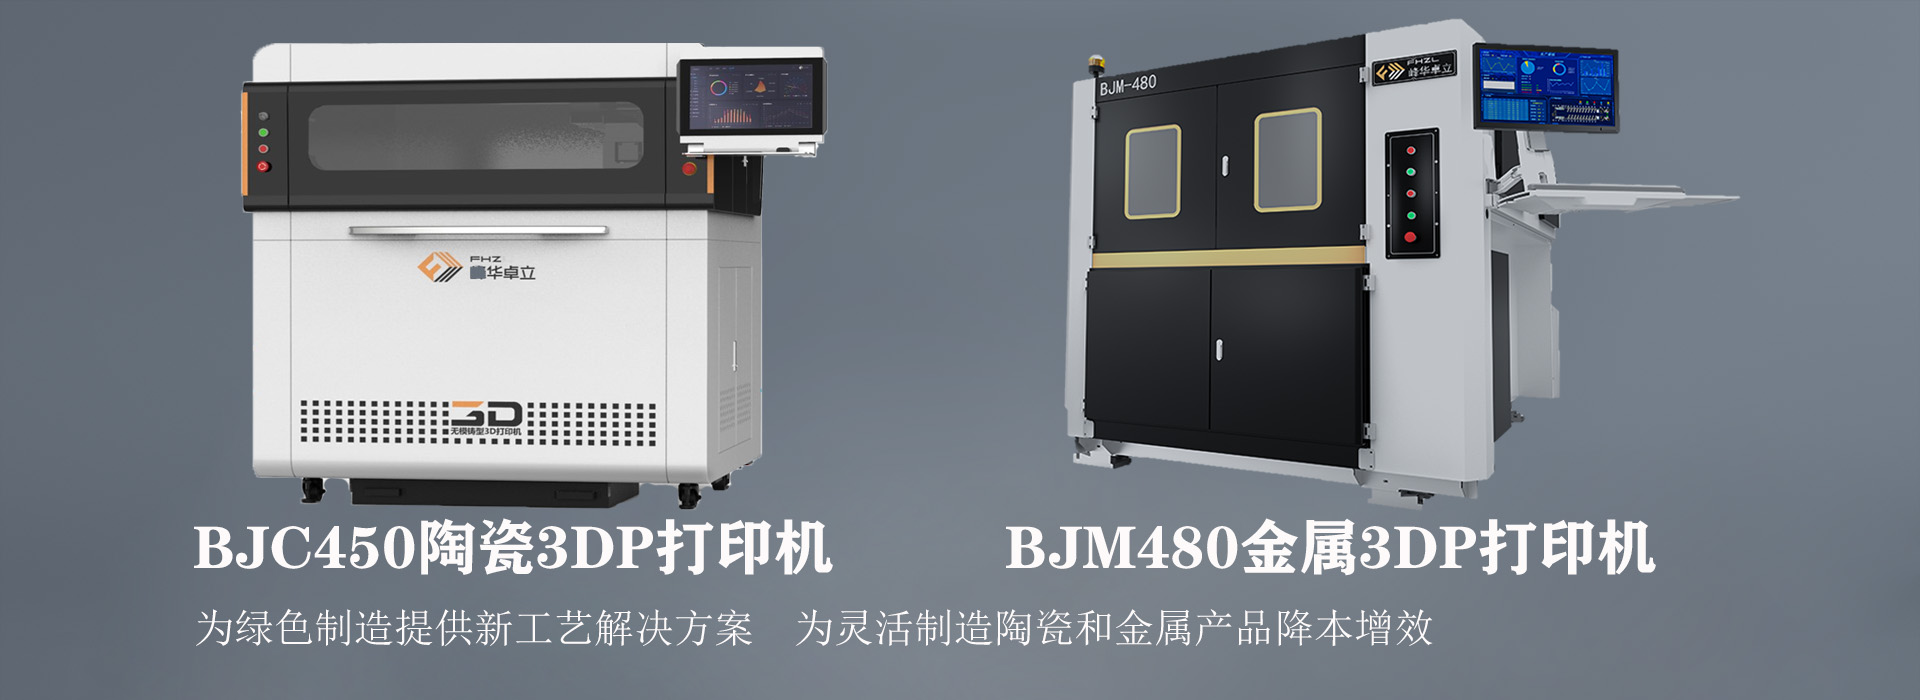 BJM480打印機